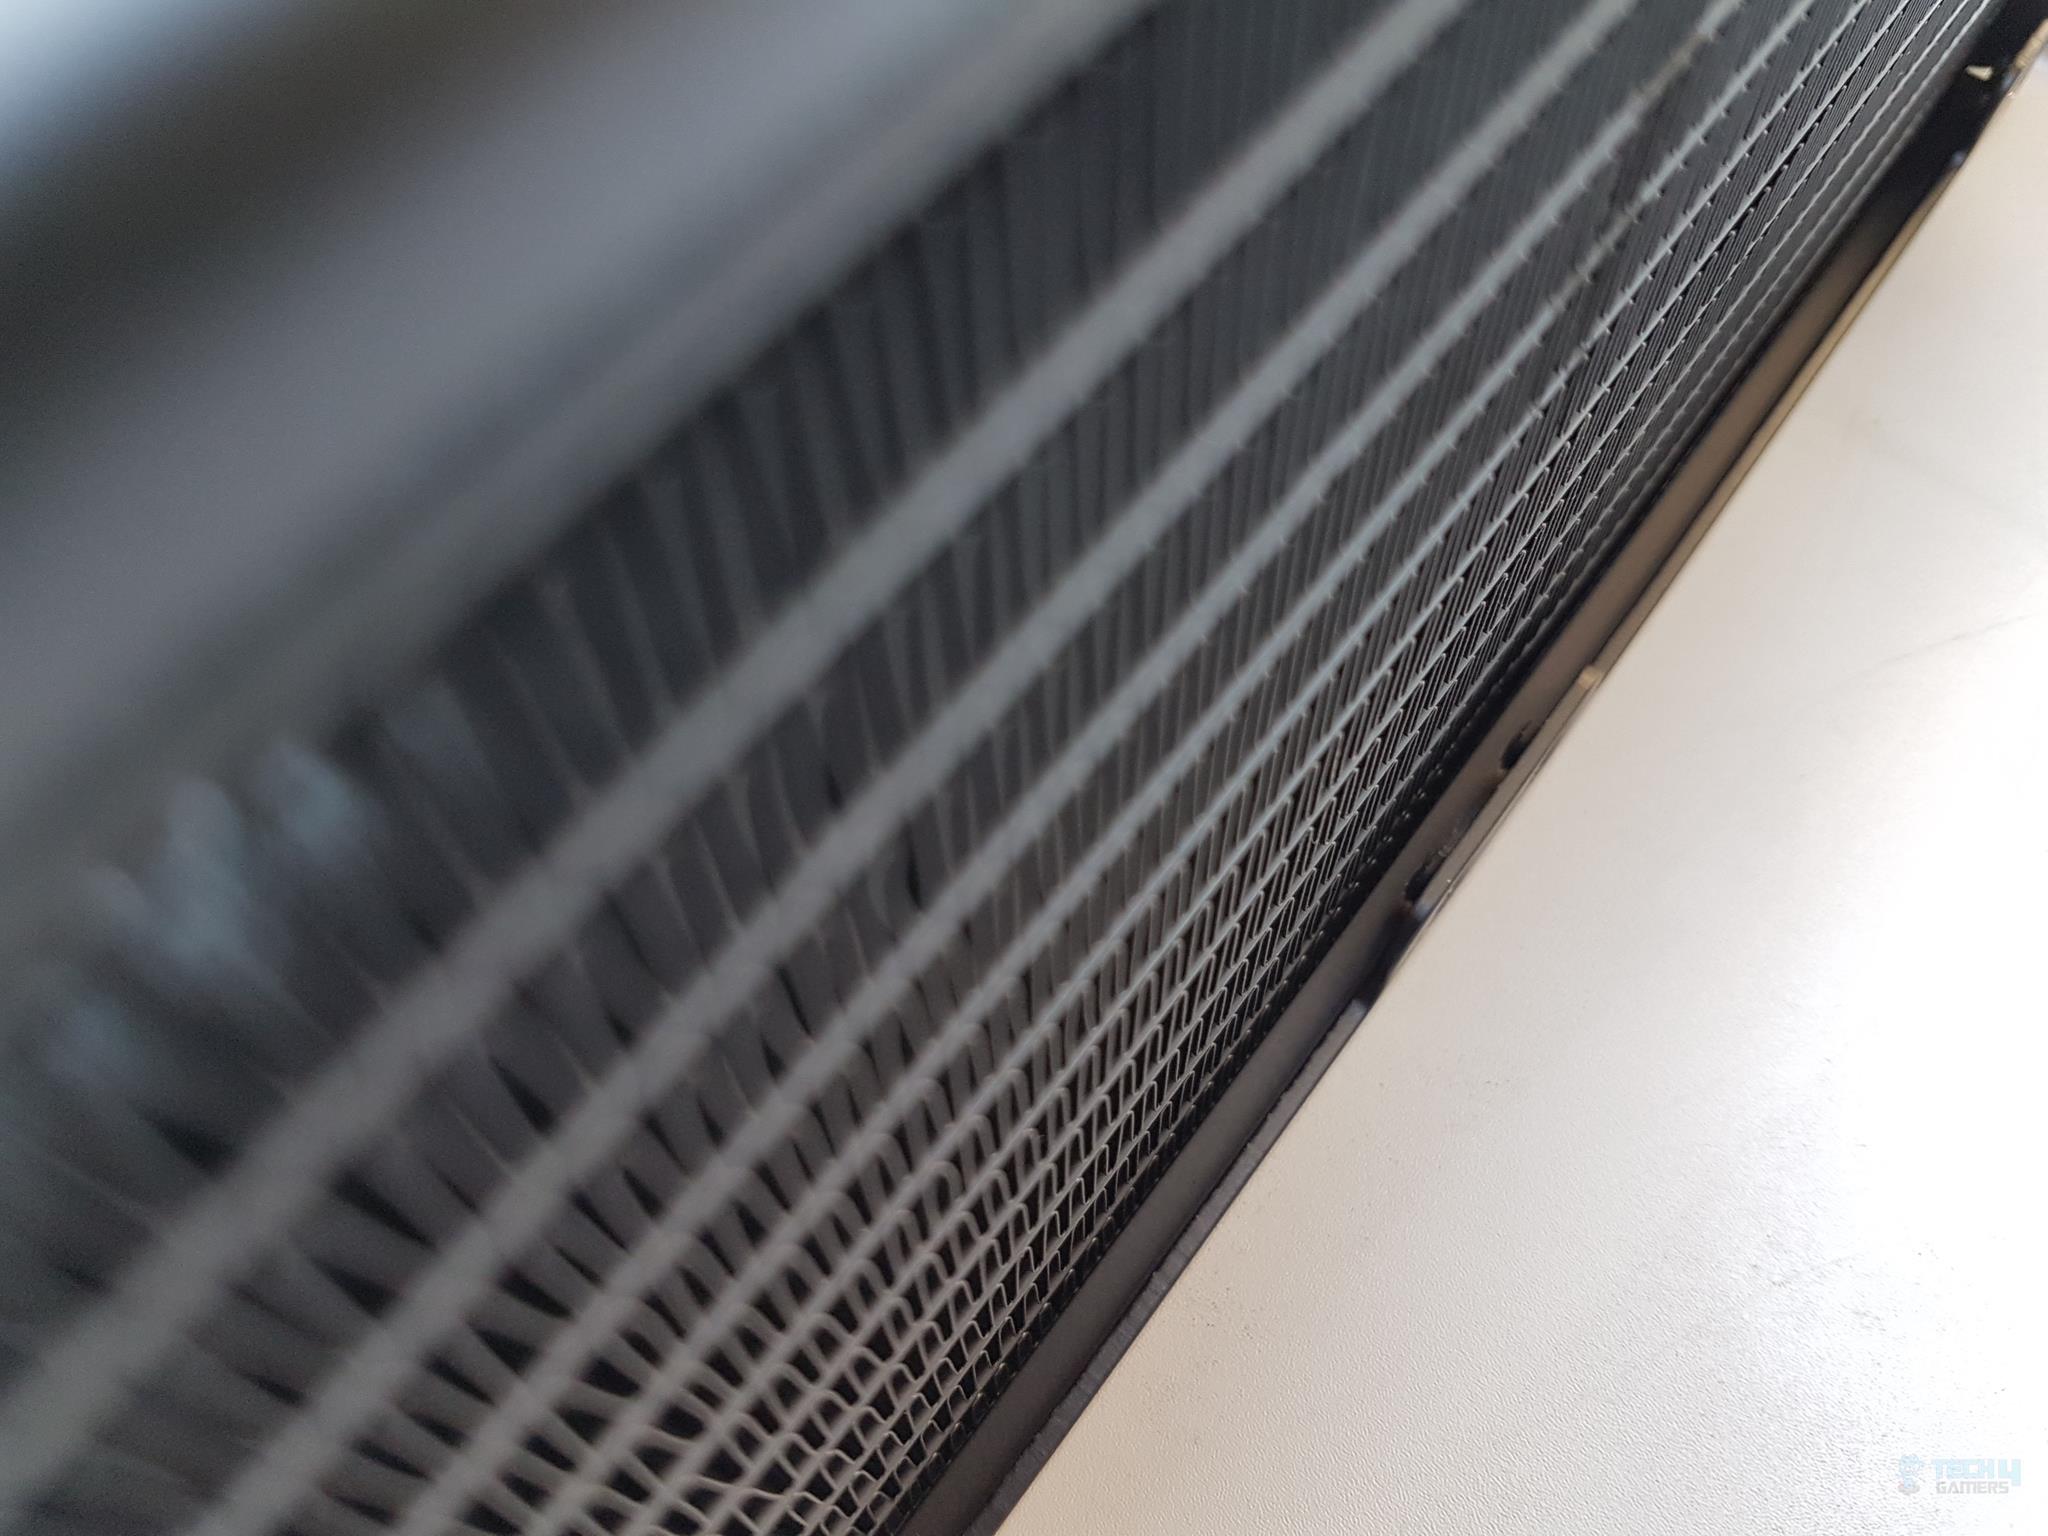 XPG Levante 240 Liquid CPU Cooler — The fins of the radiator